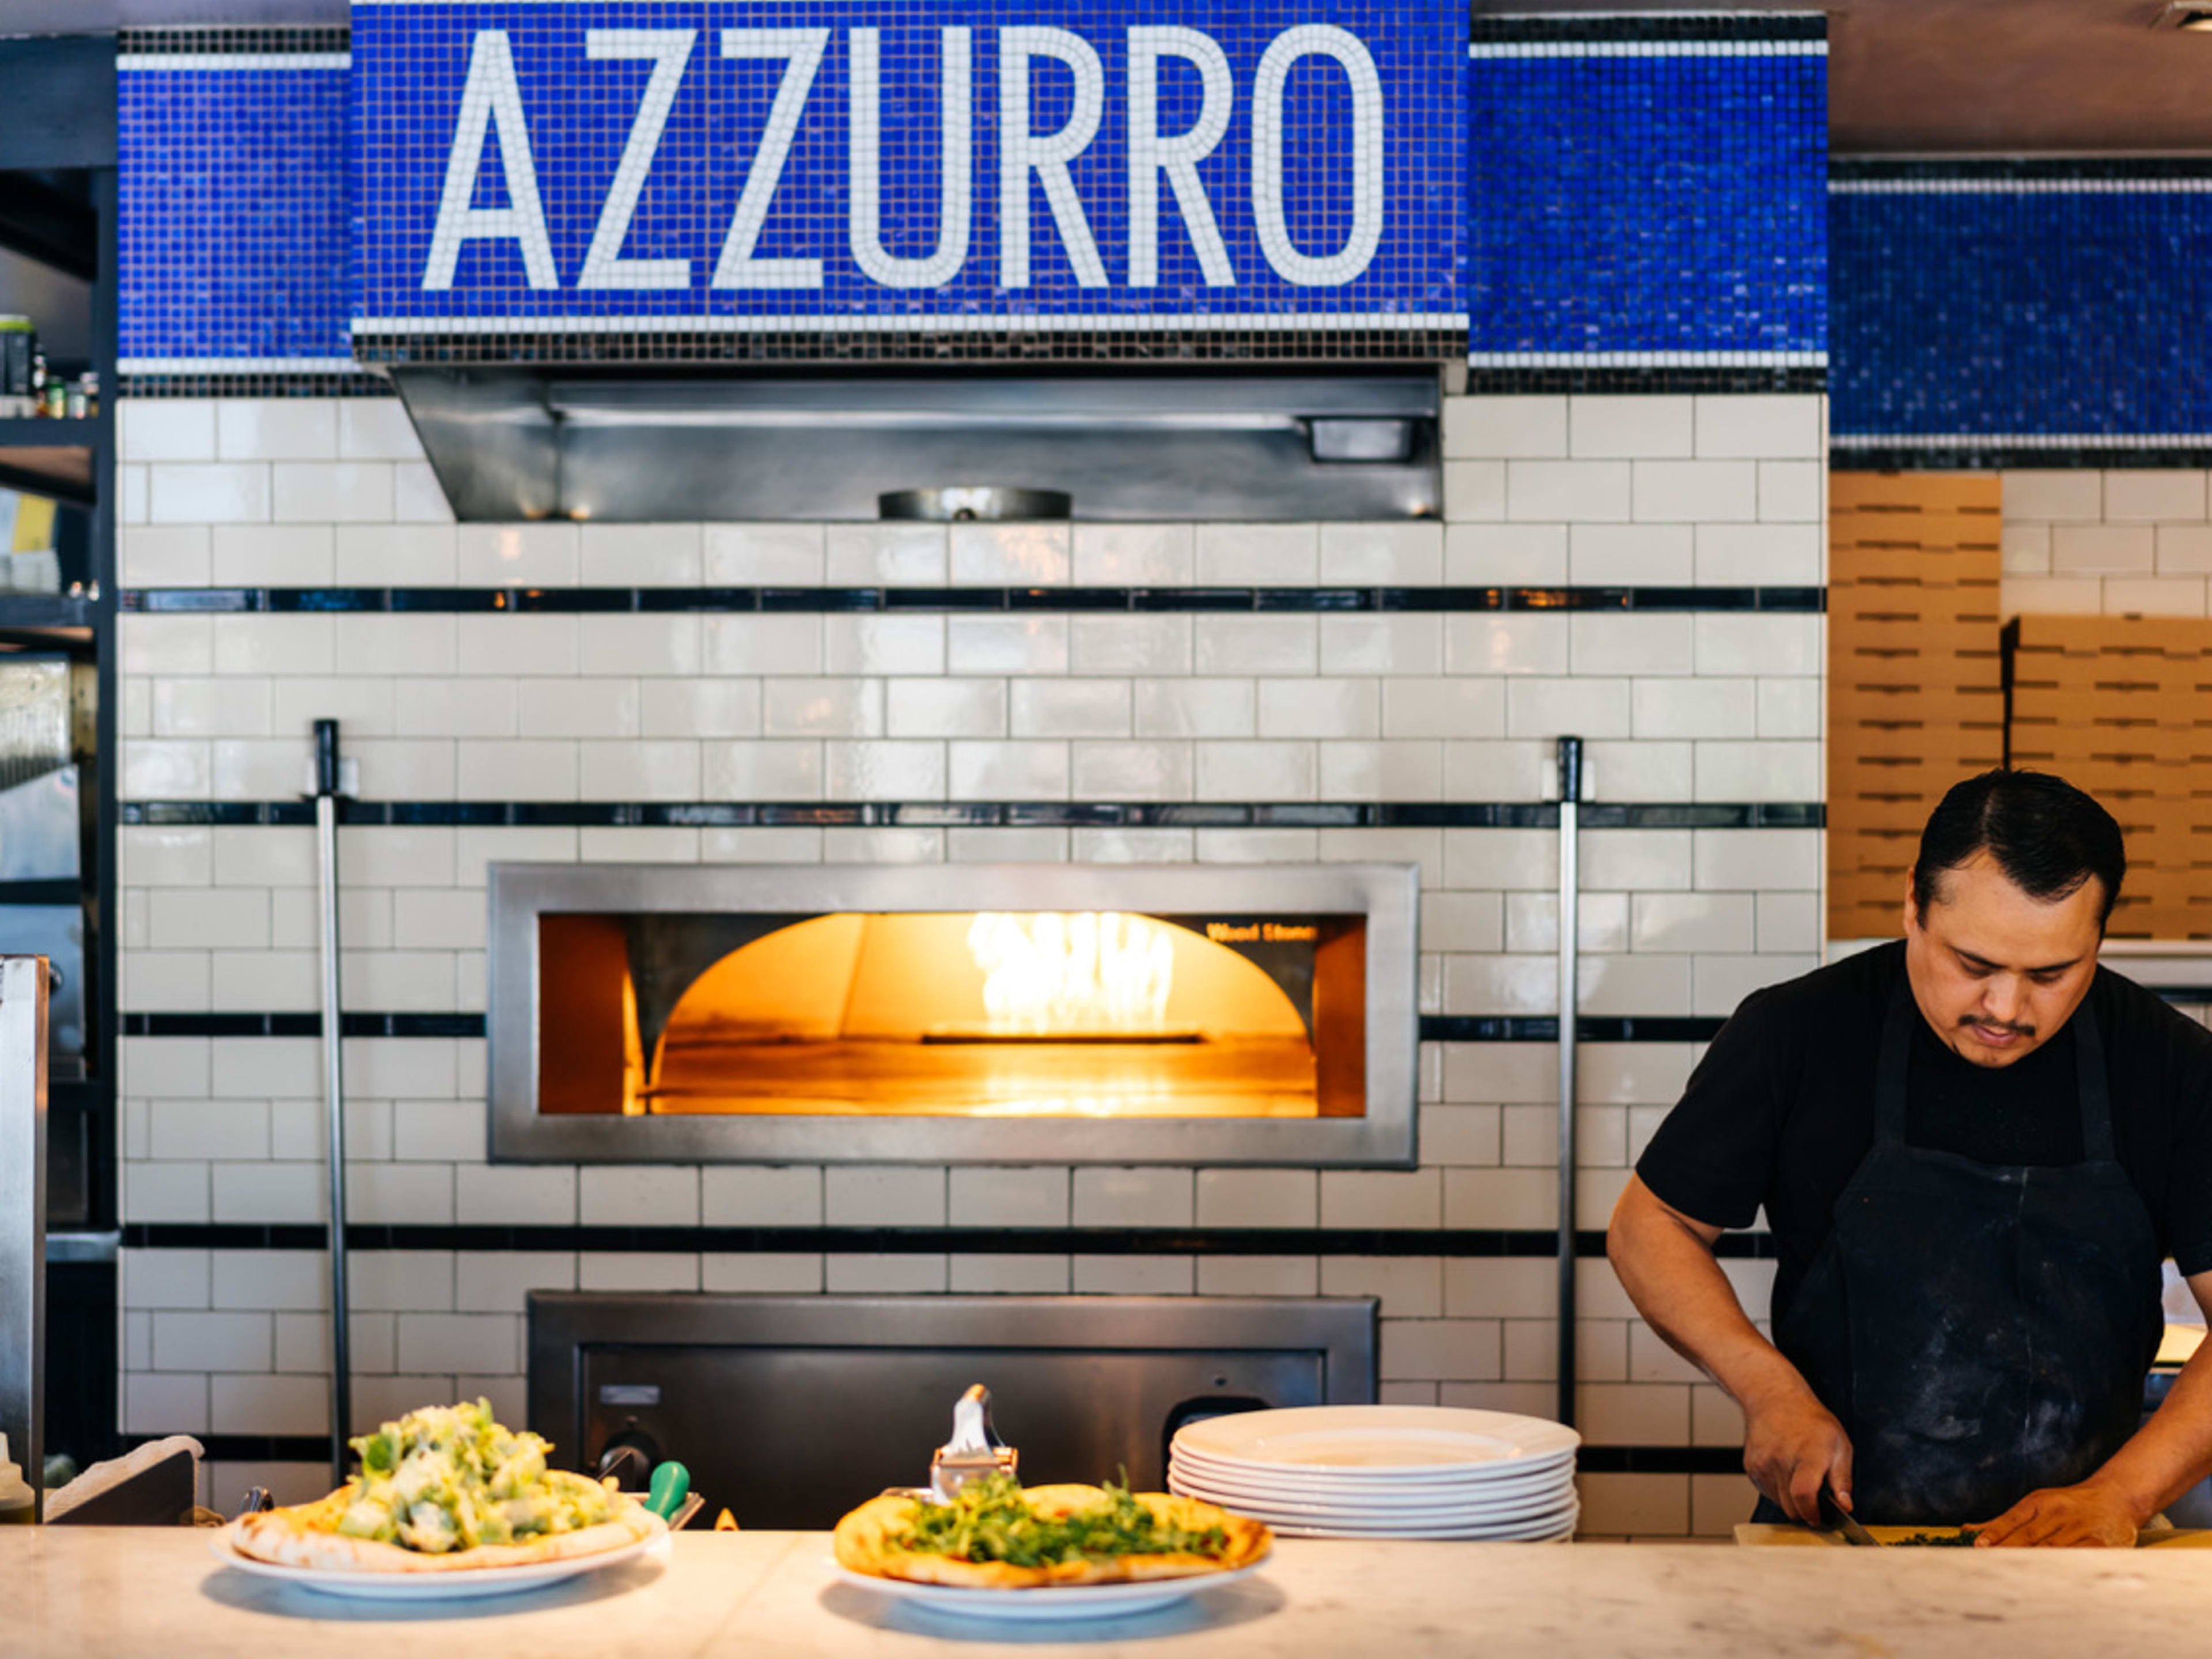 Azzurro Pizzeria e Enoteca image